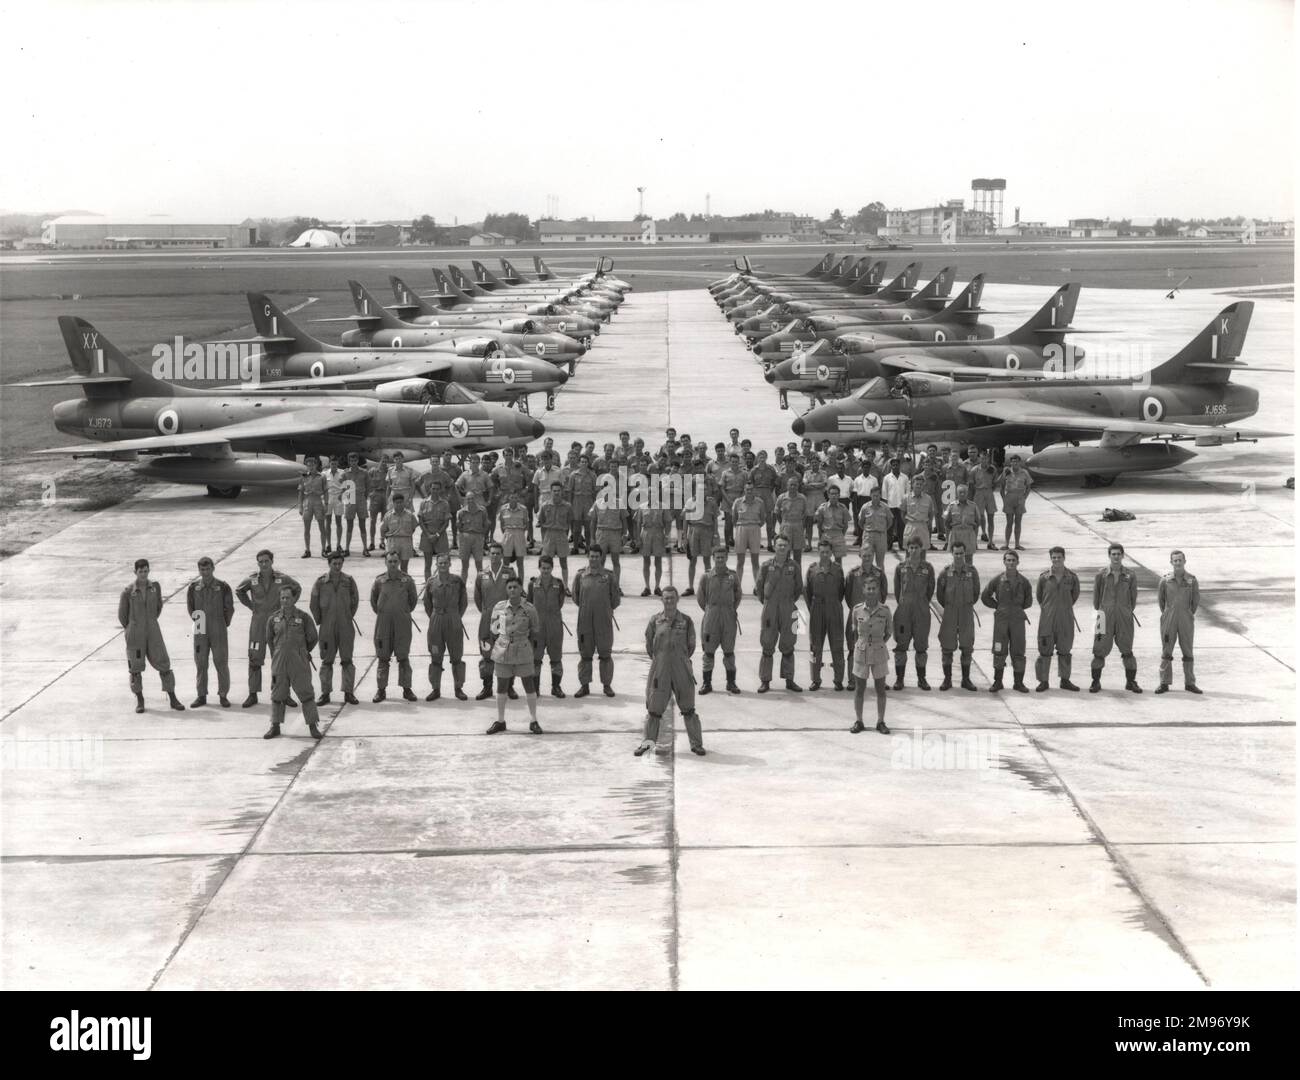 Des membres du No20 Squadron, RAF, photographiés avec une partie de leur Hawker Hunter F6s à la RAF Tengah, Singapour, pour célébrer l’anniversaire de l’escadron en 50th. L'escadron a été formé 50 ans auparavant le 1 septembre 1915. Banque D'Images